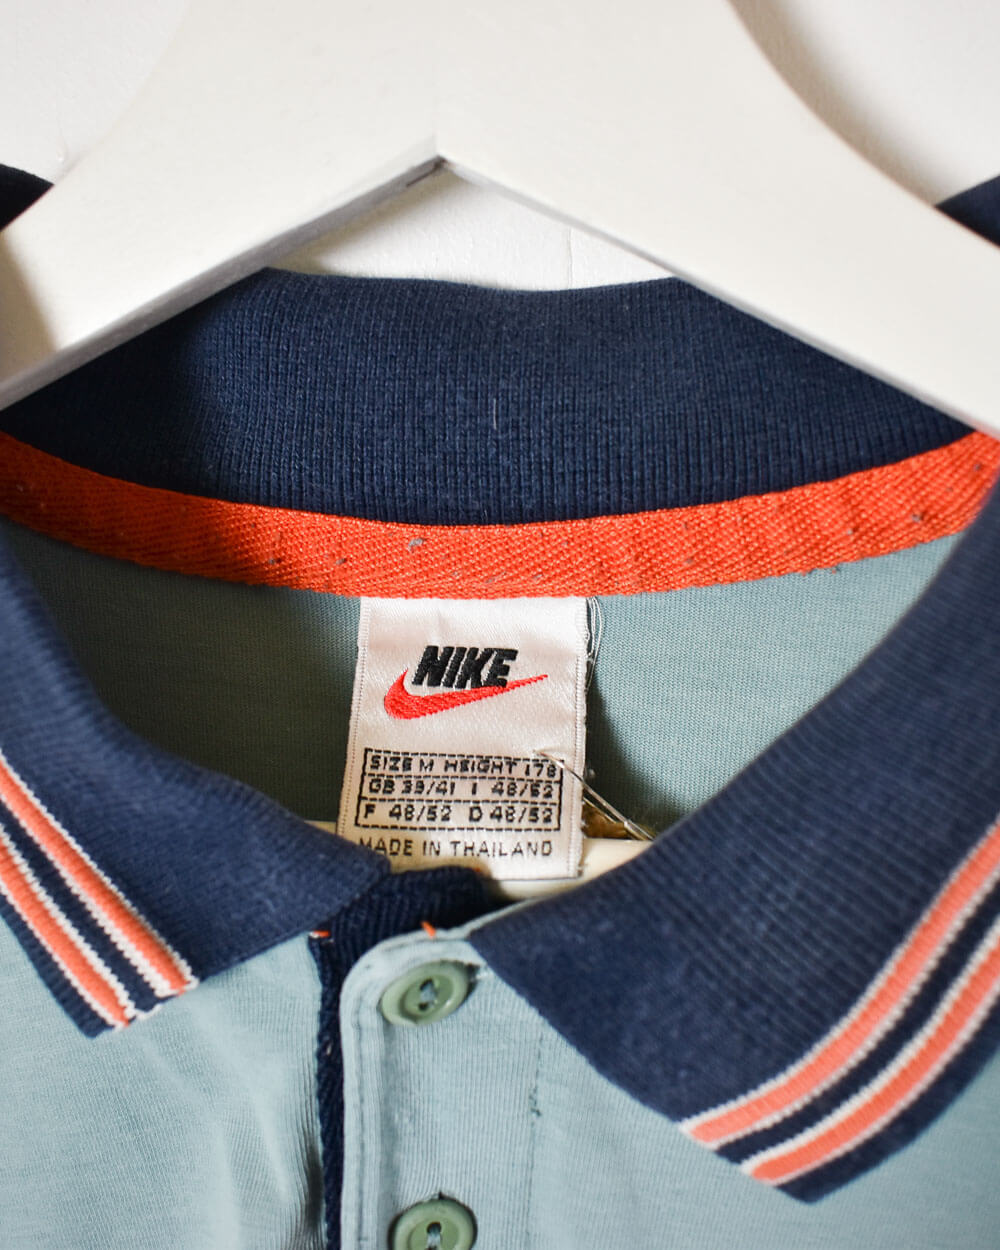 Baby Nike Polo Shirt - Large